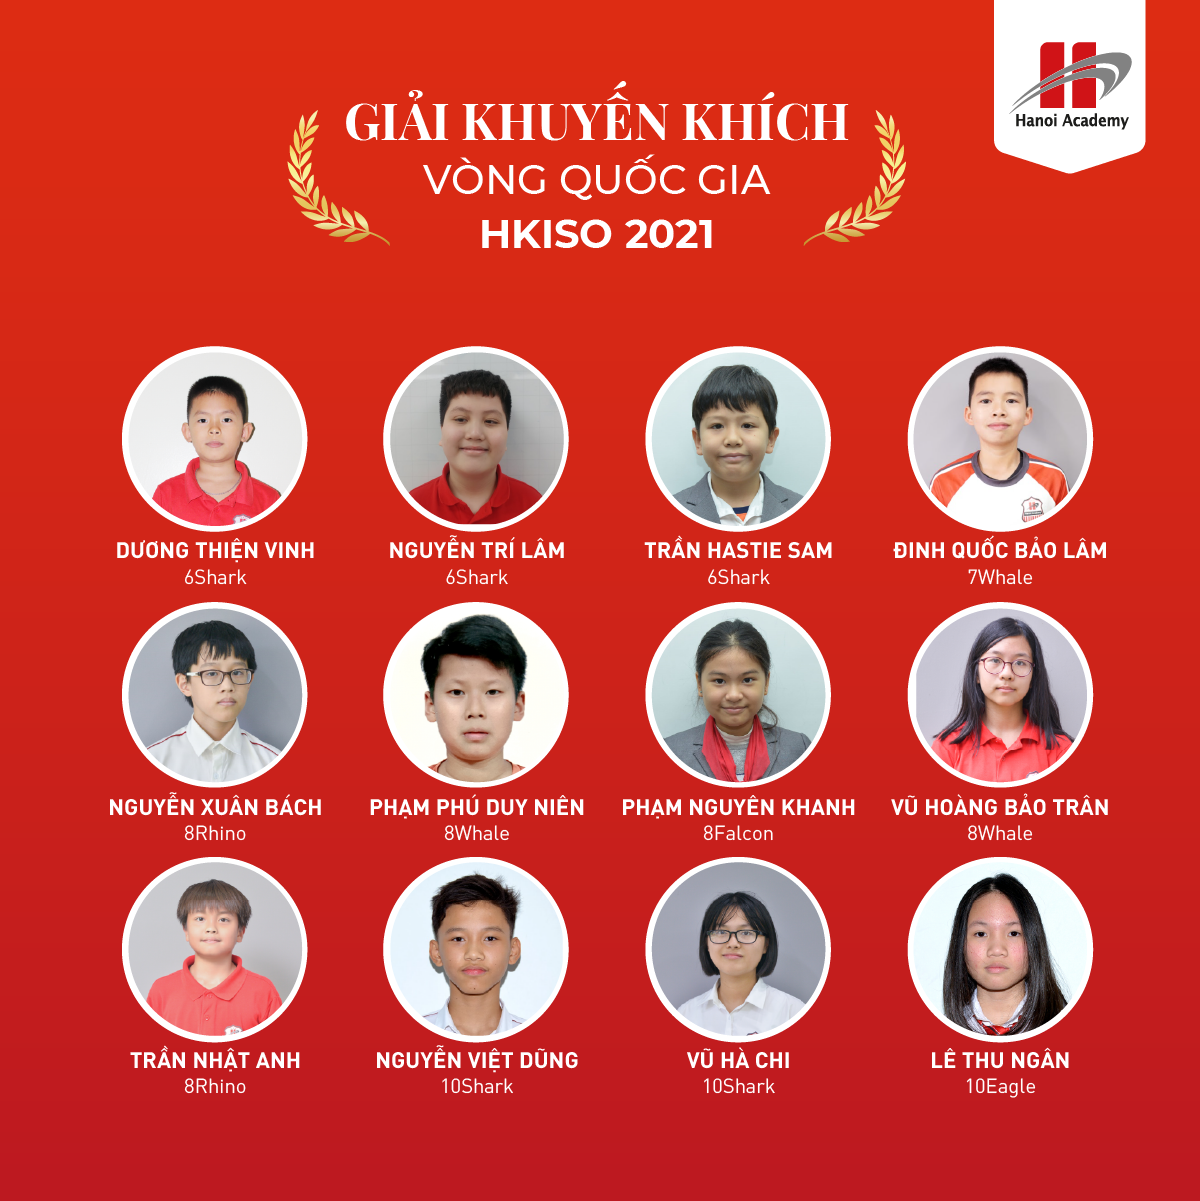 Đội tuyển Hanoi Academy xuất sắc giành những giải thưởng quan trọng trong cuộc thi HKISO 2020 &#8211; 2021